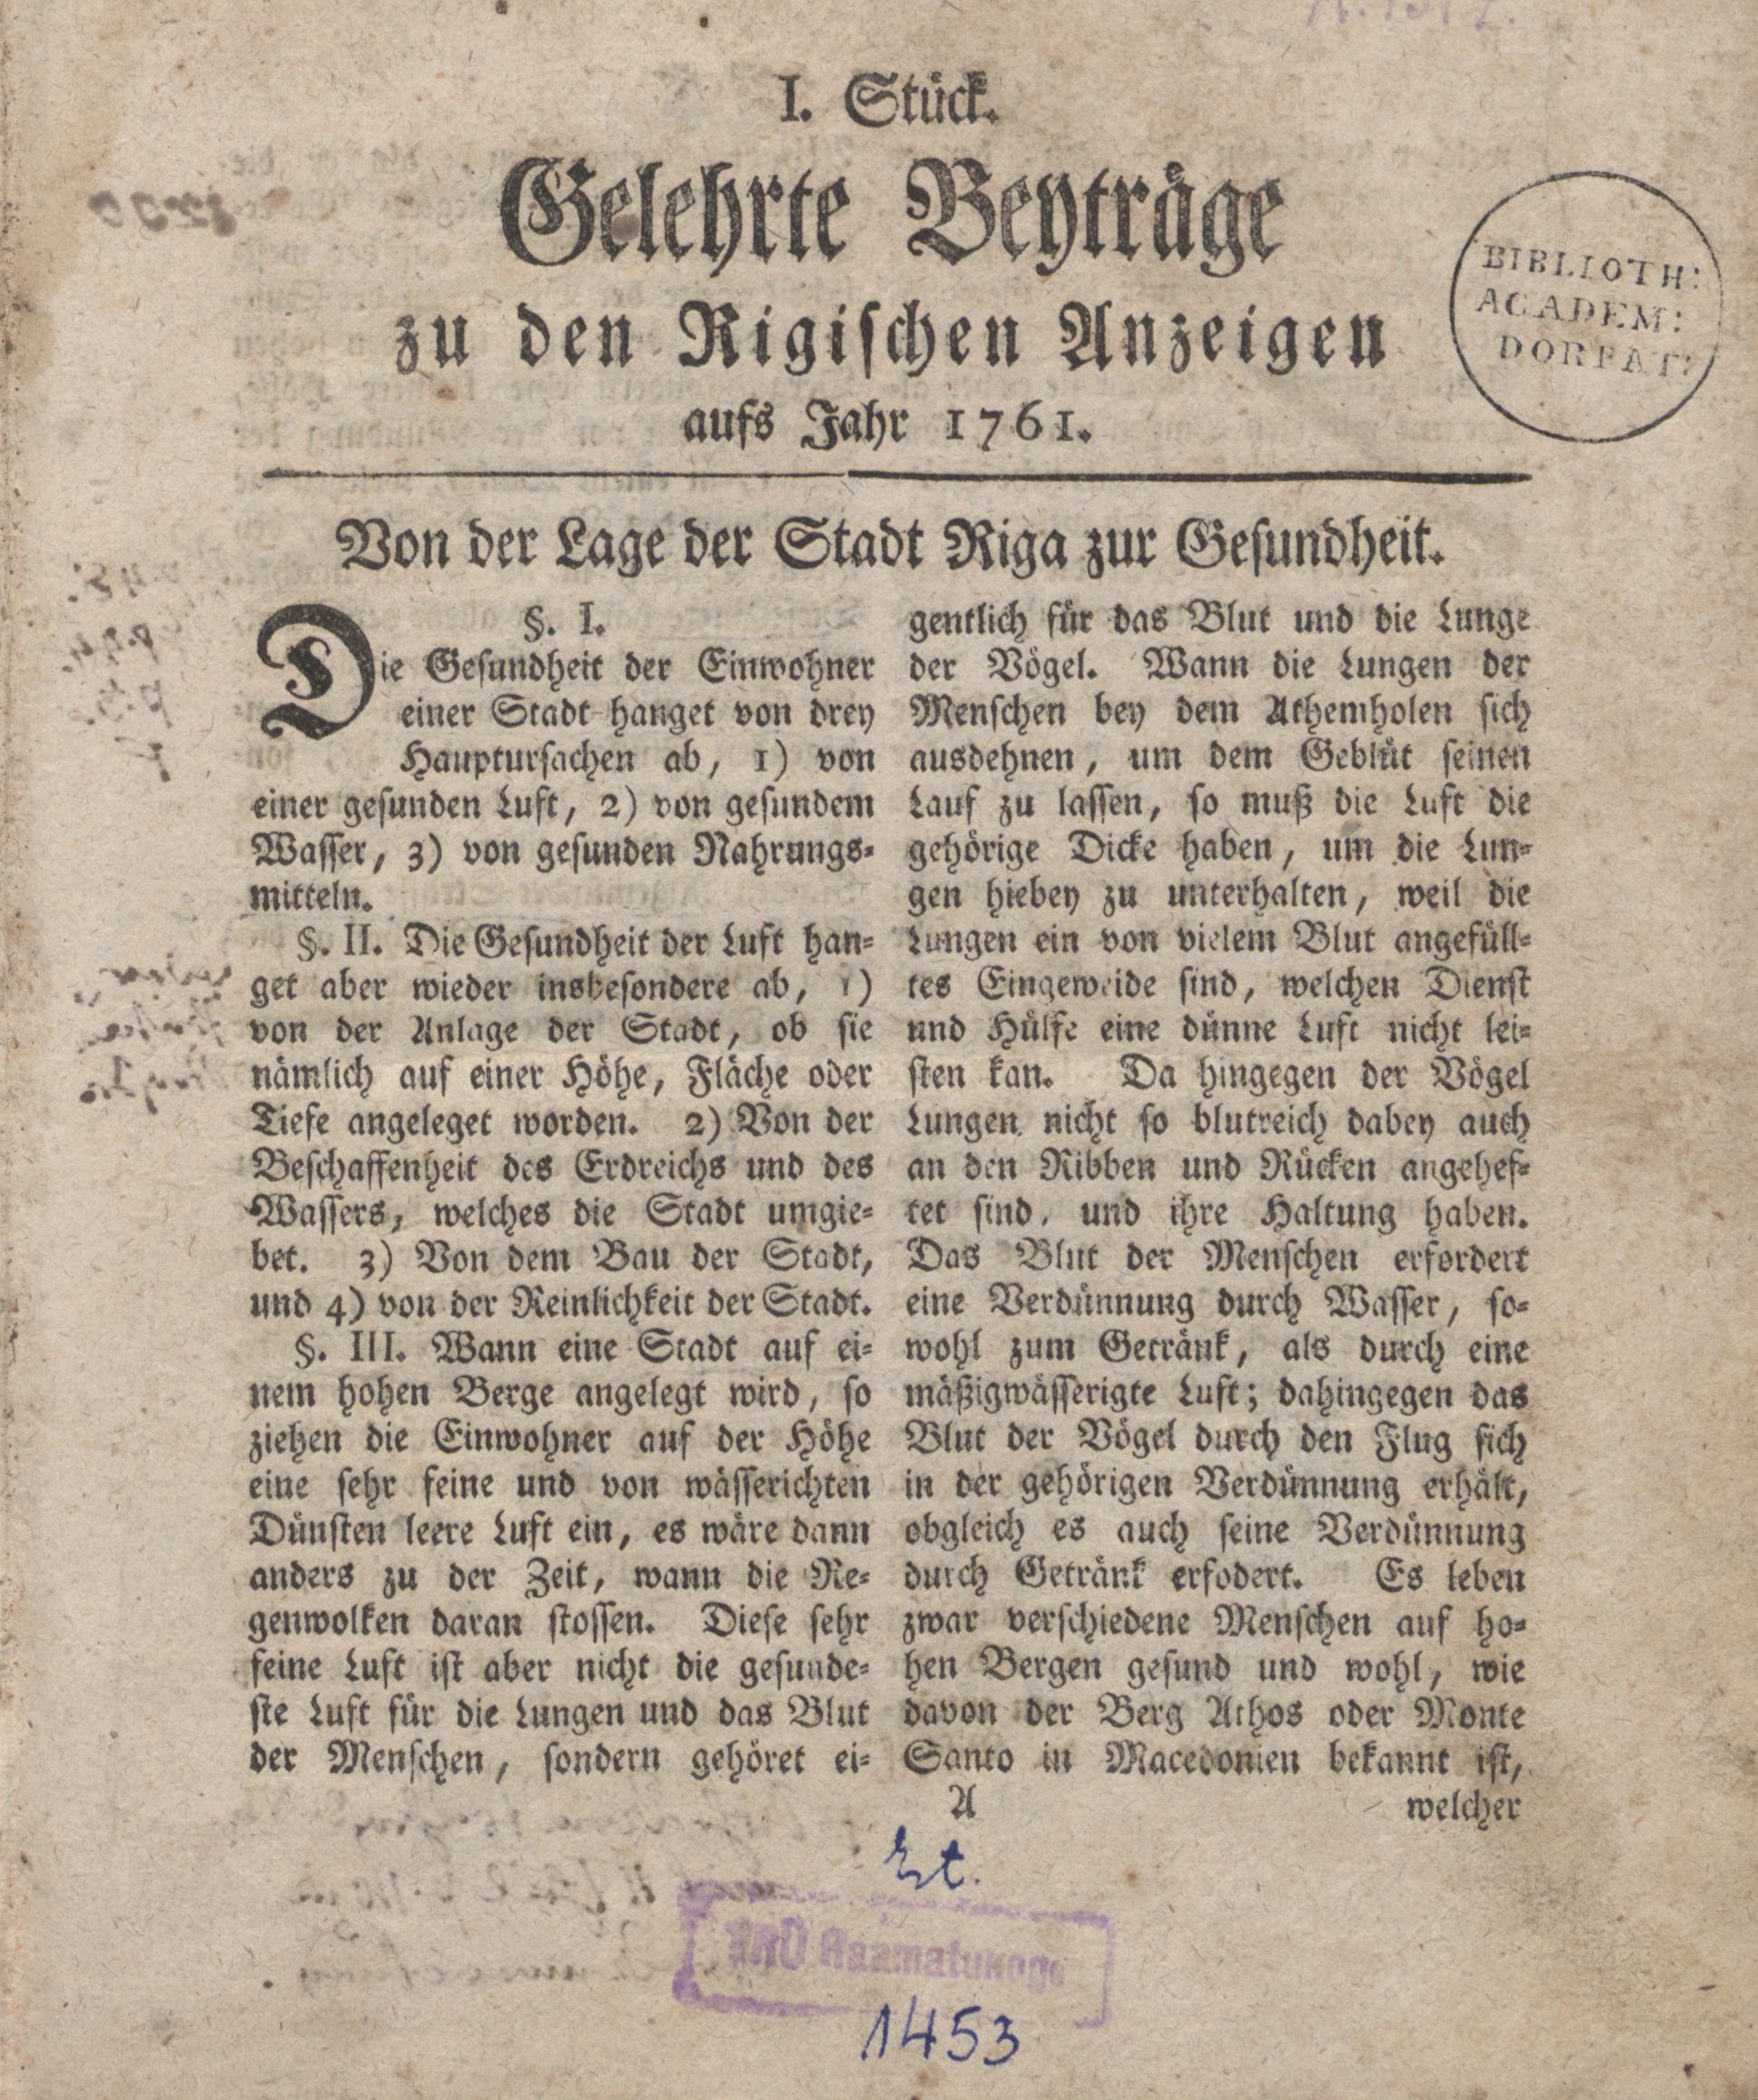 Gelehrte Beyträge zu den Rigischen Anzeigen 1761 (1761) | 1. (1) Title page